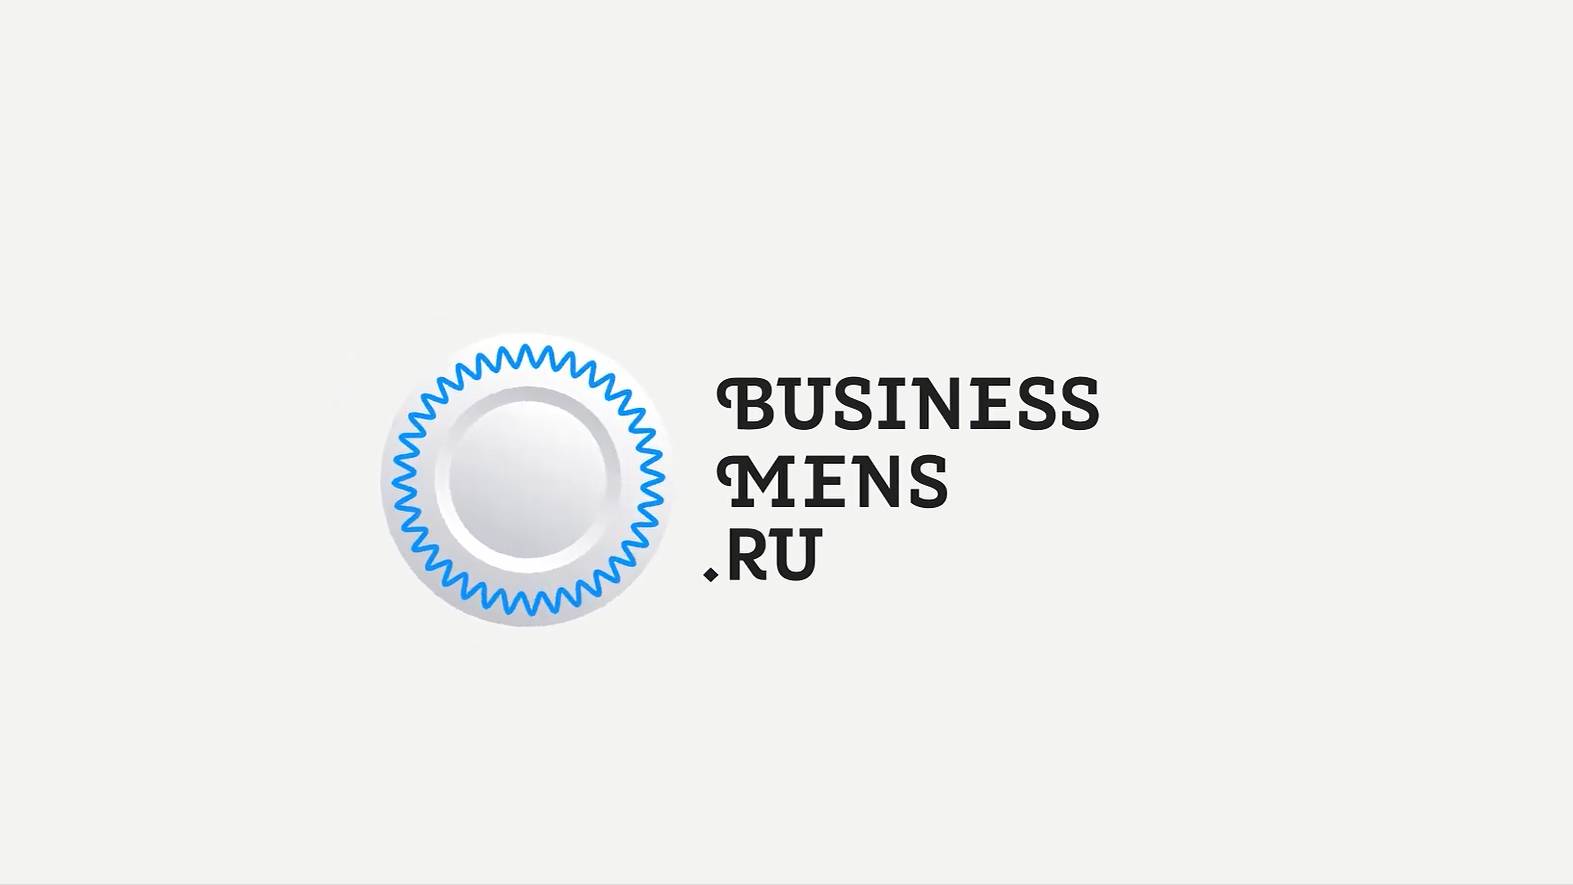 Бизнесменс.ру берёт интервью у франшизы ТНК – как начать зарабатывать на сертификации без